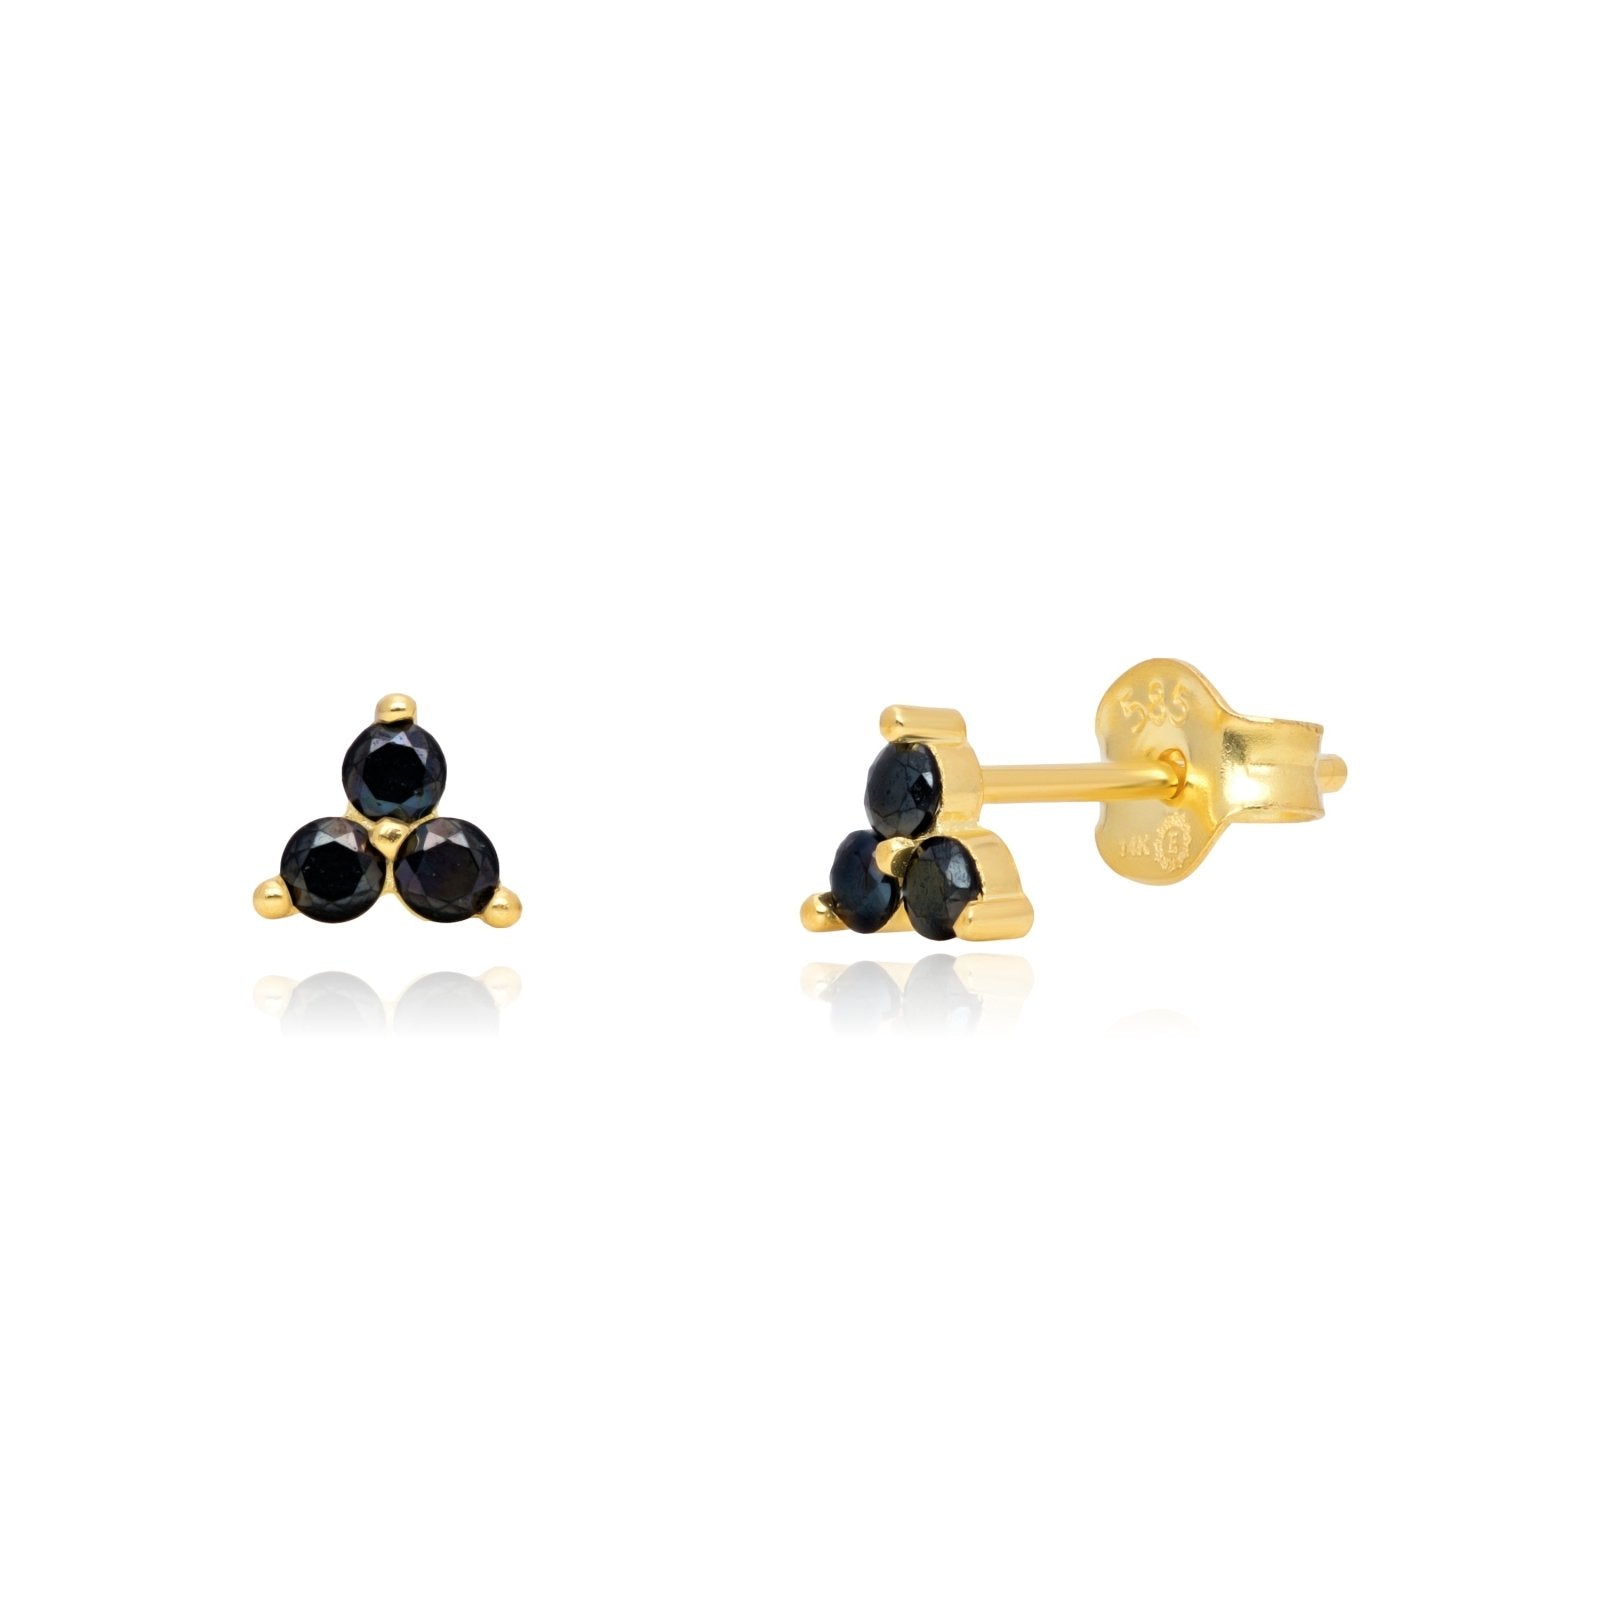 Black Onyx Trinity Cluster Stud Earrings Earrings Estella Collection 17741-Pair 14k Black Gemstone Black Onyx #tag4# #tag5# #tag6# #tag7# #tag8# #tag9# #tag10# Pair 14K Yellow Gold